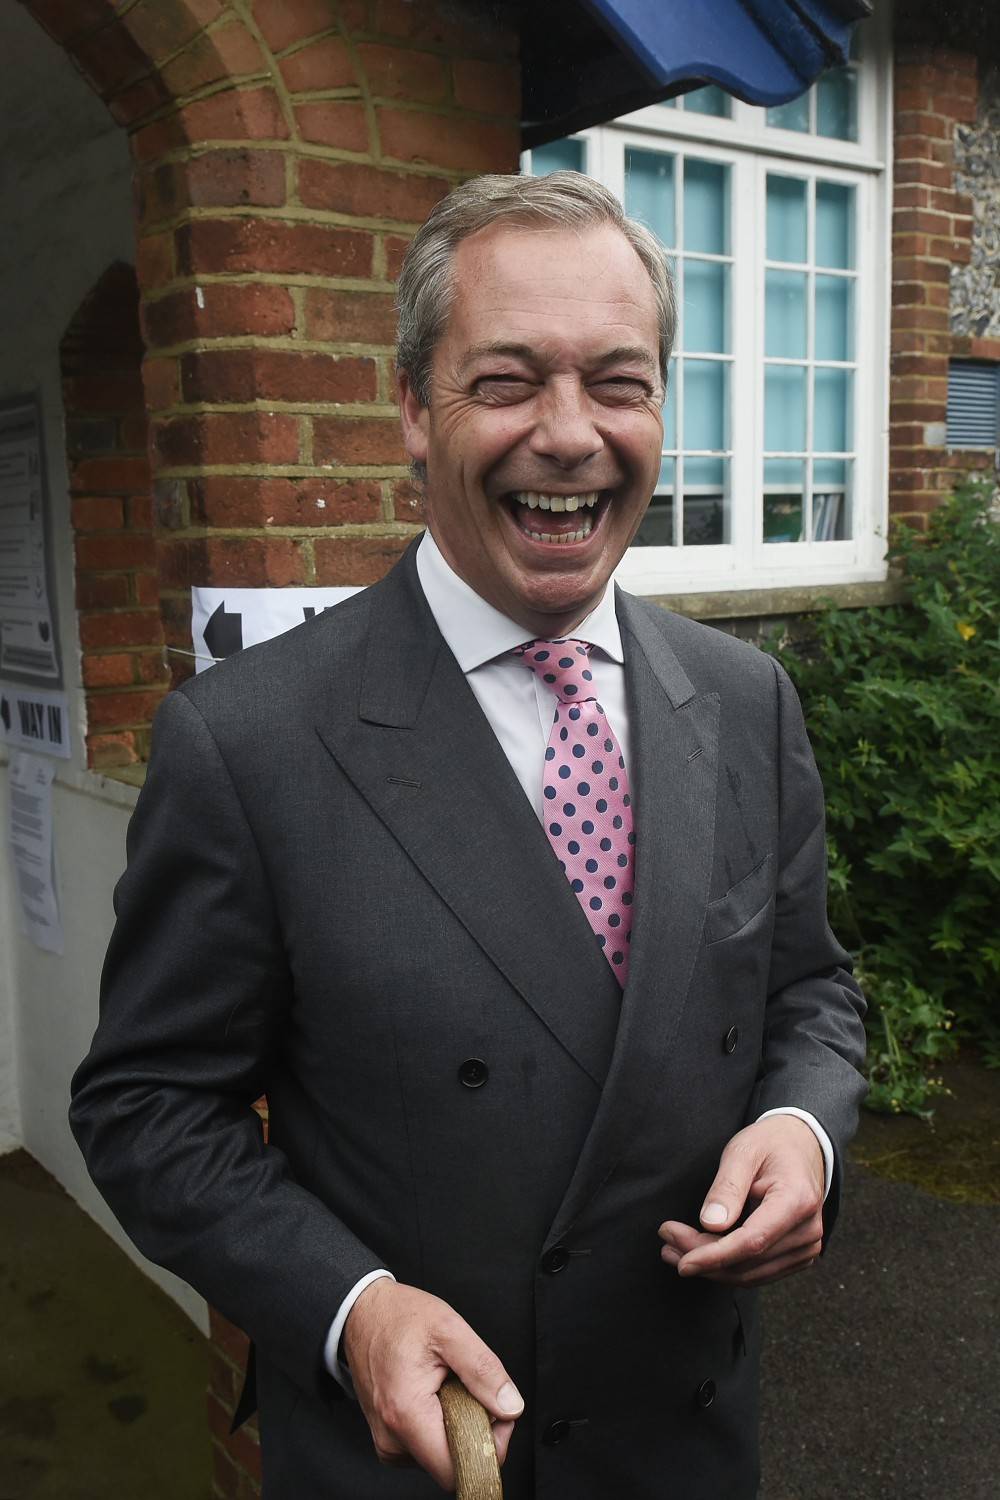 Regno Unito, fra gli sconfitti c'è anche lo Ukip che fu di Farage